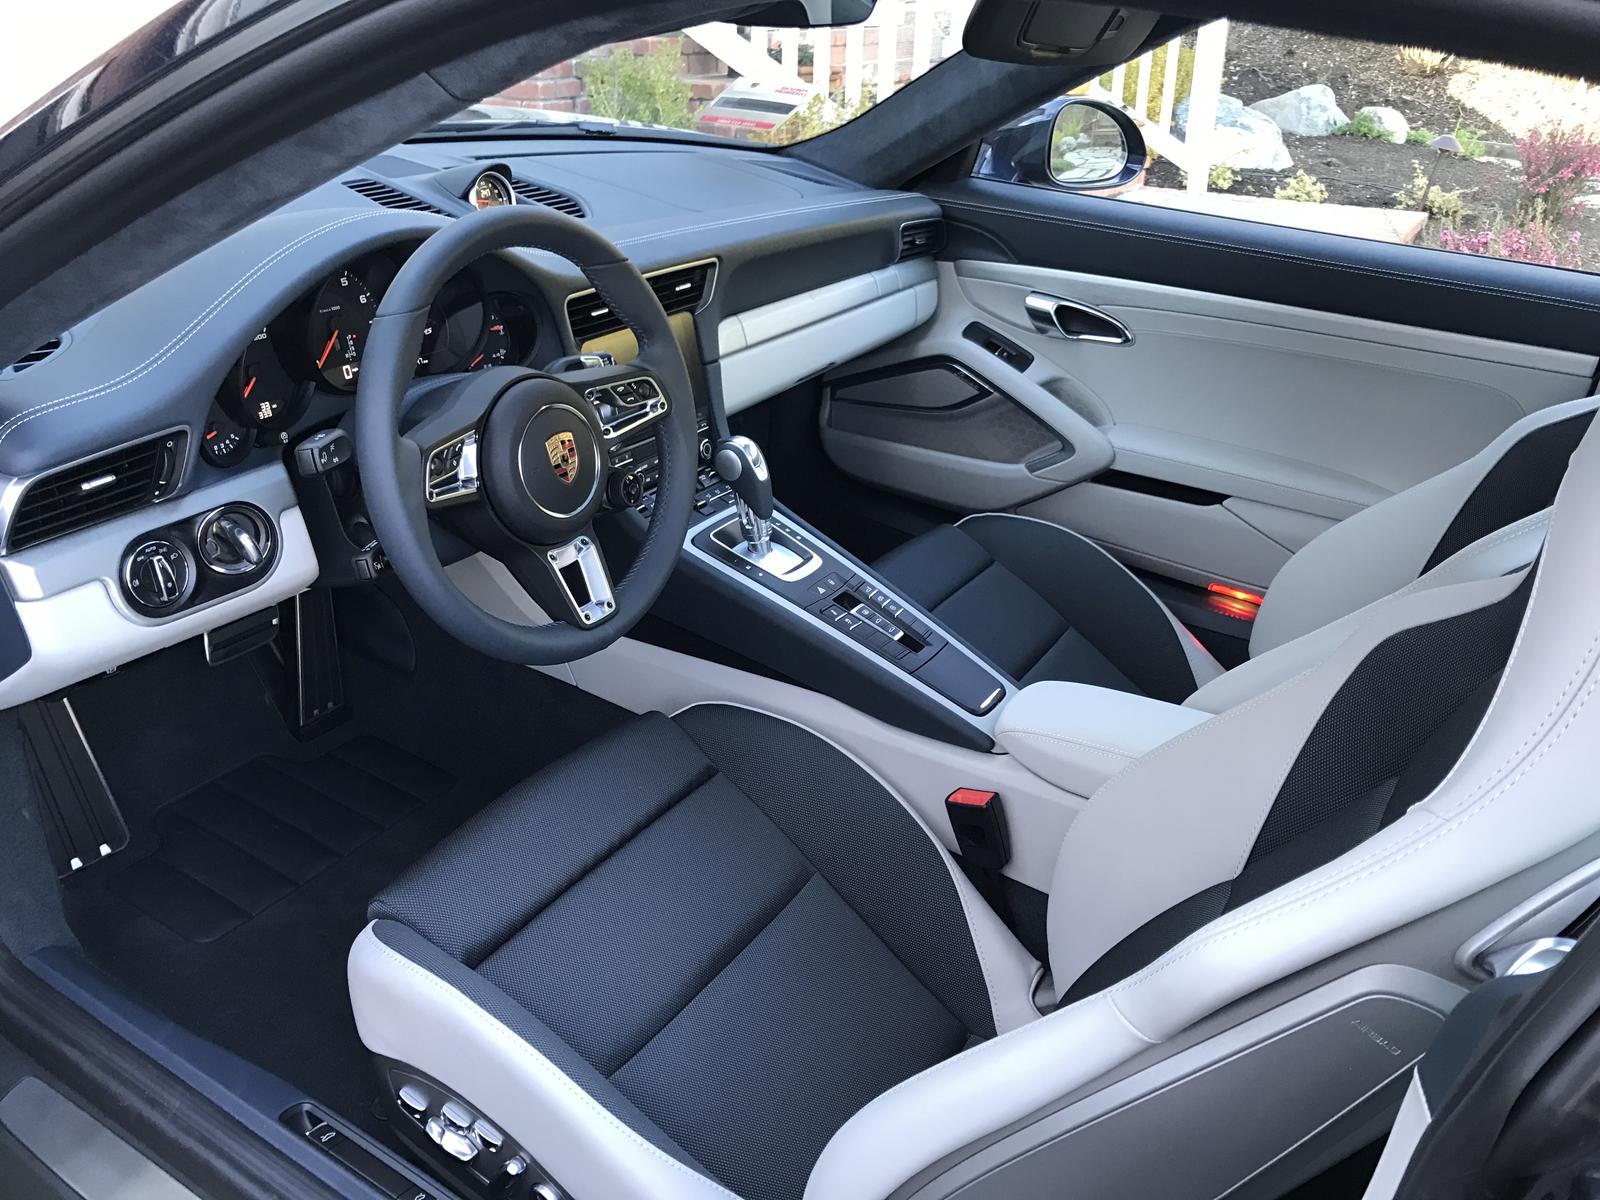 Floor and rear deck mats for graphite blue interior? - Rennlist - Porsche  Discussion Forums